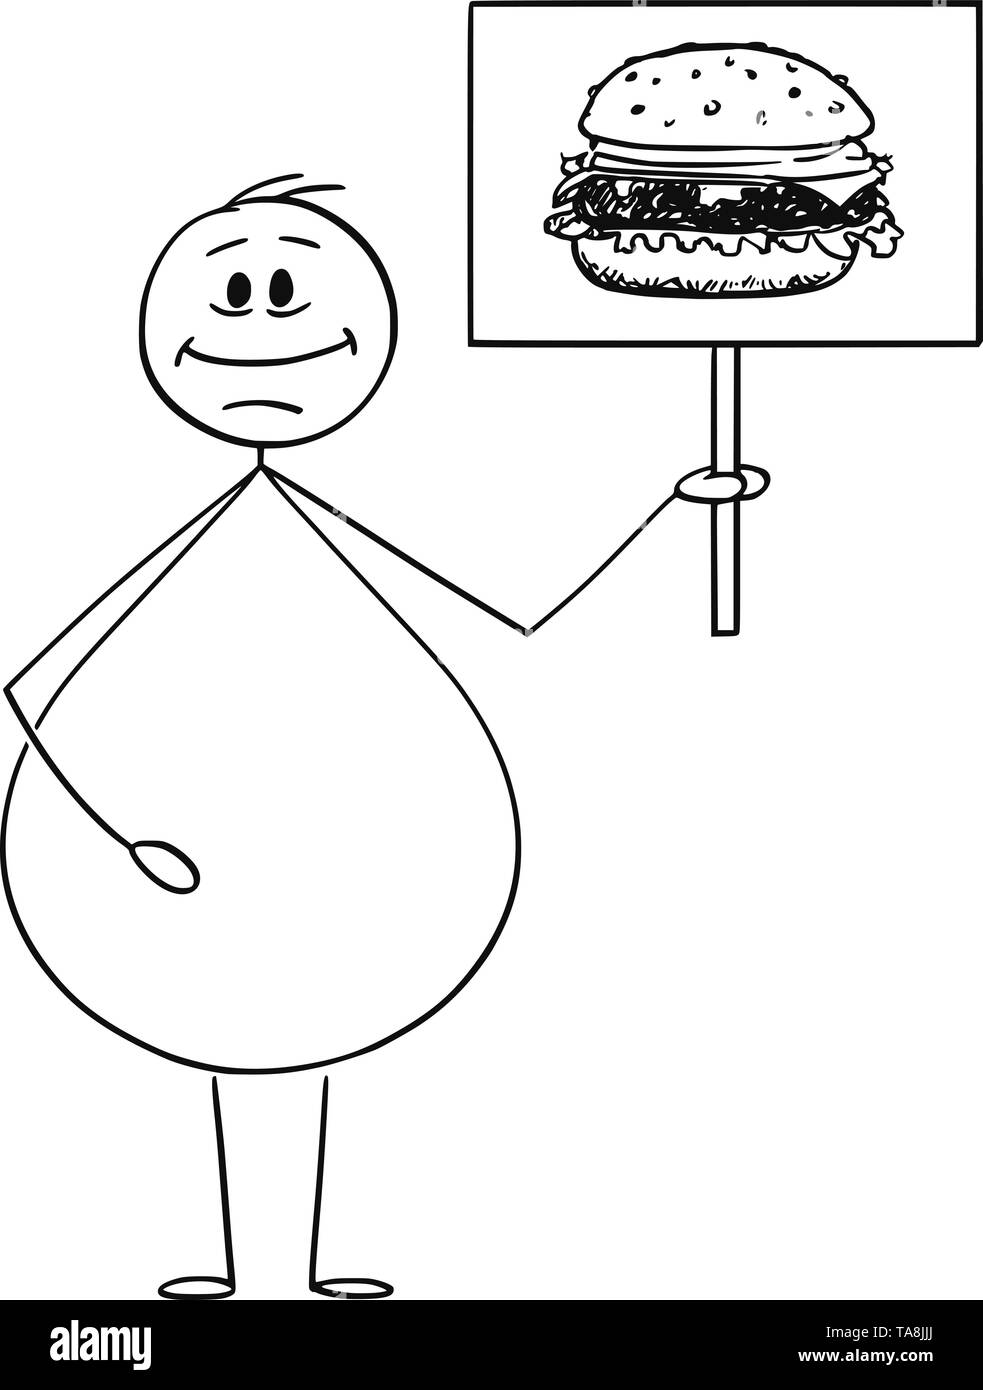 Vector cartoon stick figura disegno illustrazione concettuale di sorridere il sovrappeso o obesi uomo Holding firmano con hamburger o burger immagine. Junk food concept. Illustrazione Vettoriale